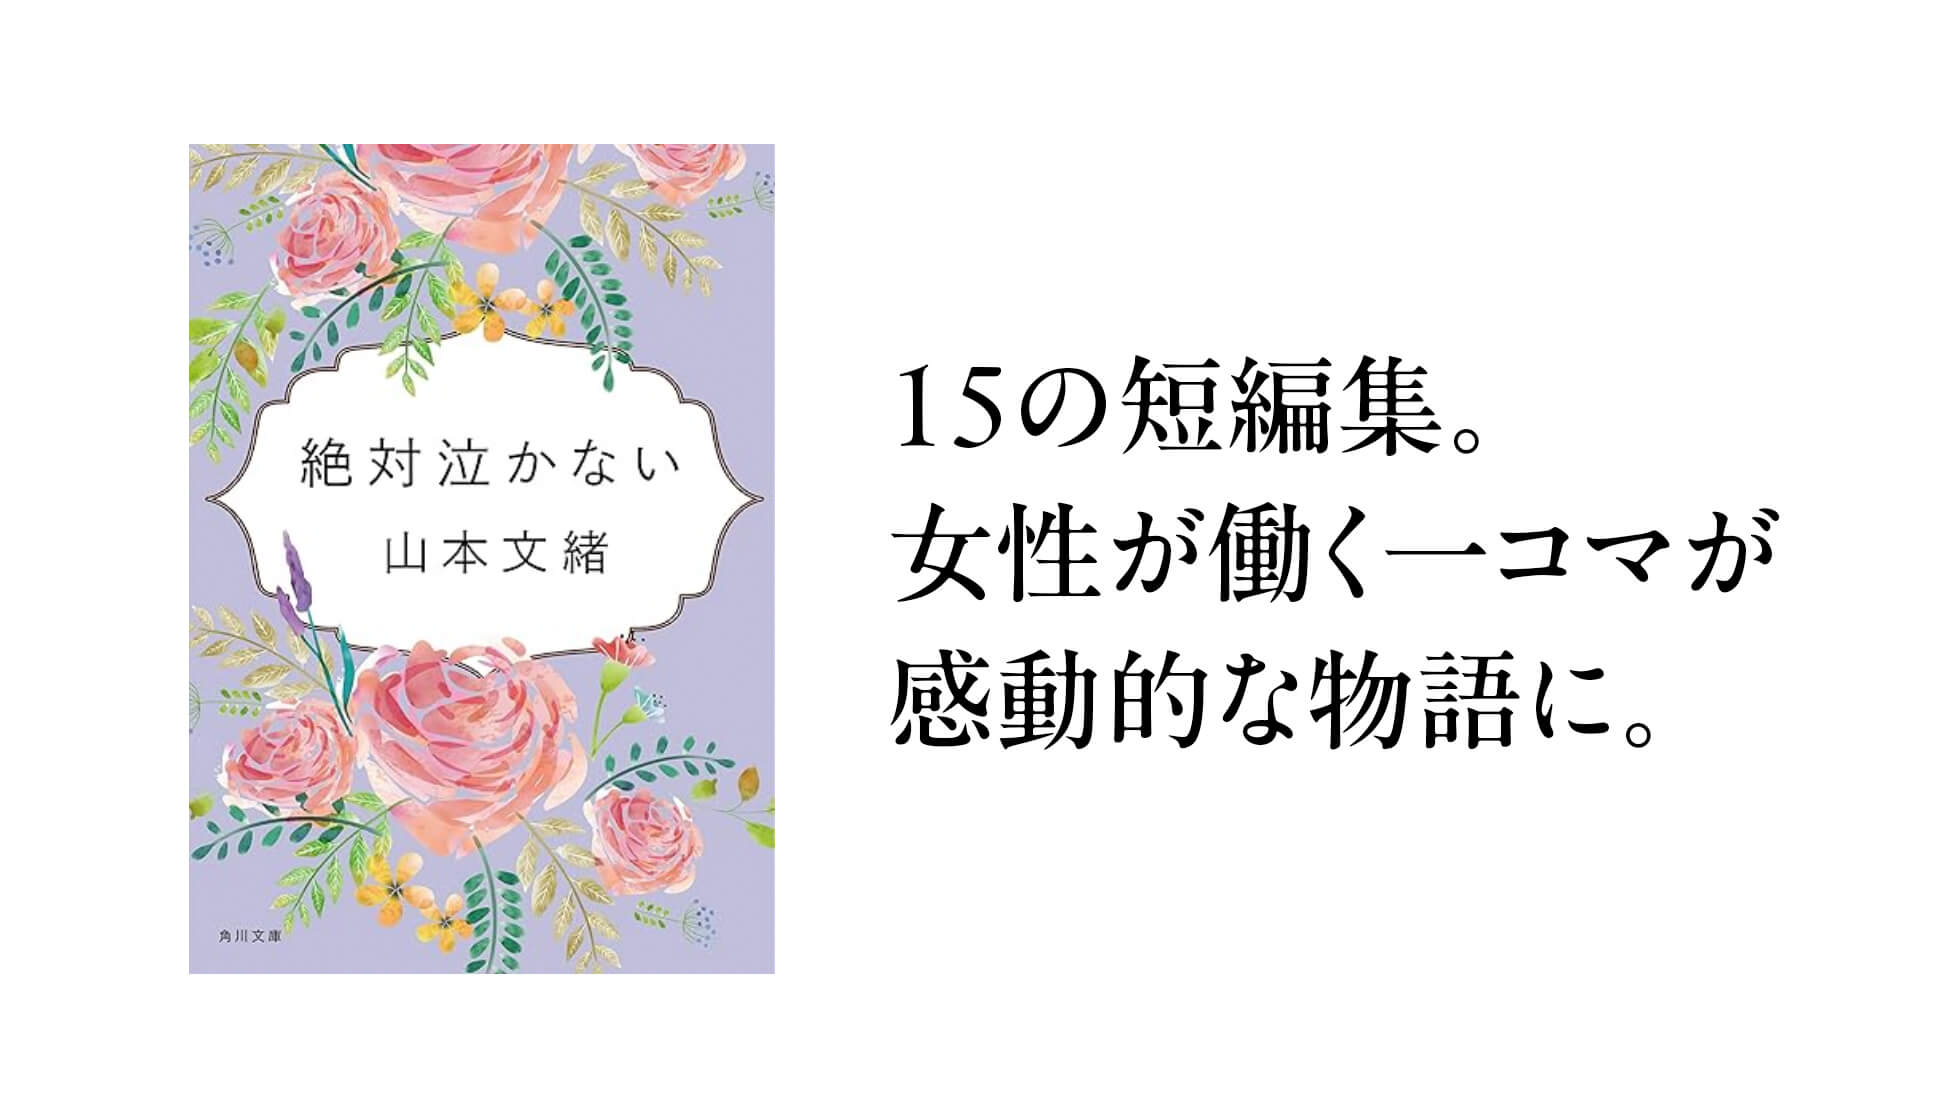 山本文緒さんの短編小説「絶対泣かない」様々な職場で働く女性の日常